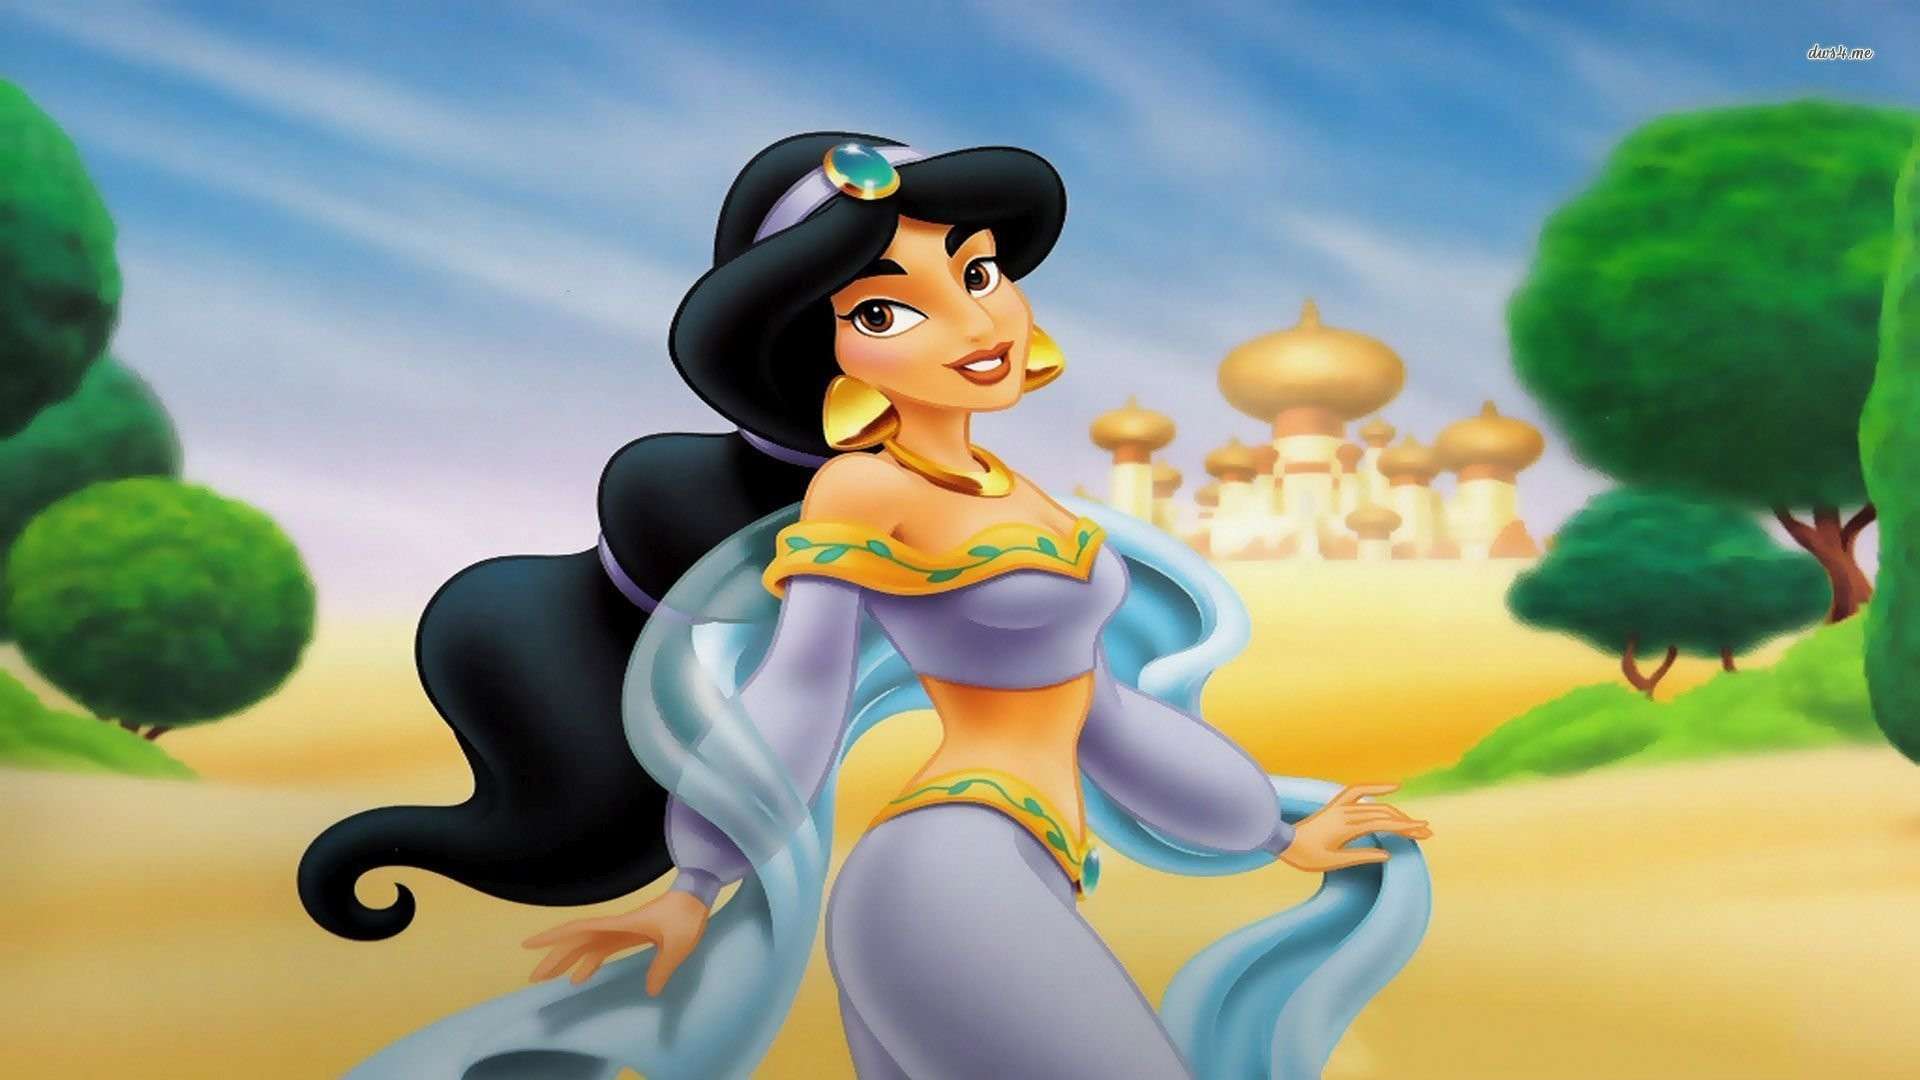 Disney Princess Jasmine HD Wallpaperwalpaperlist.com